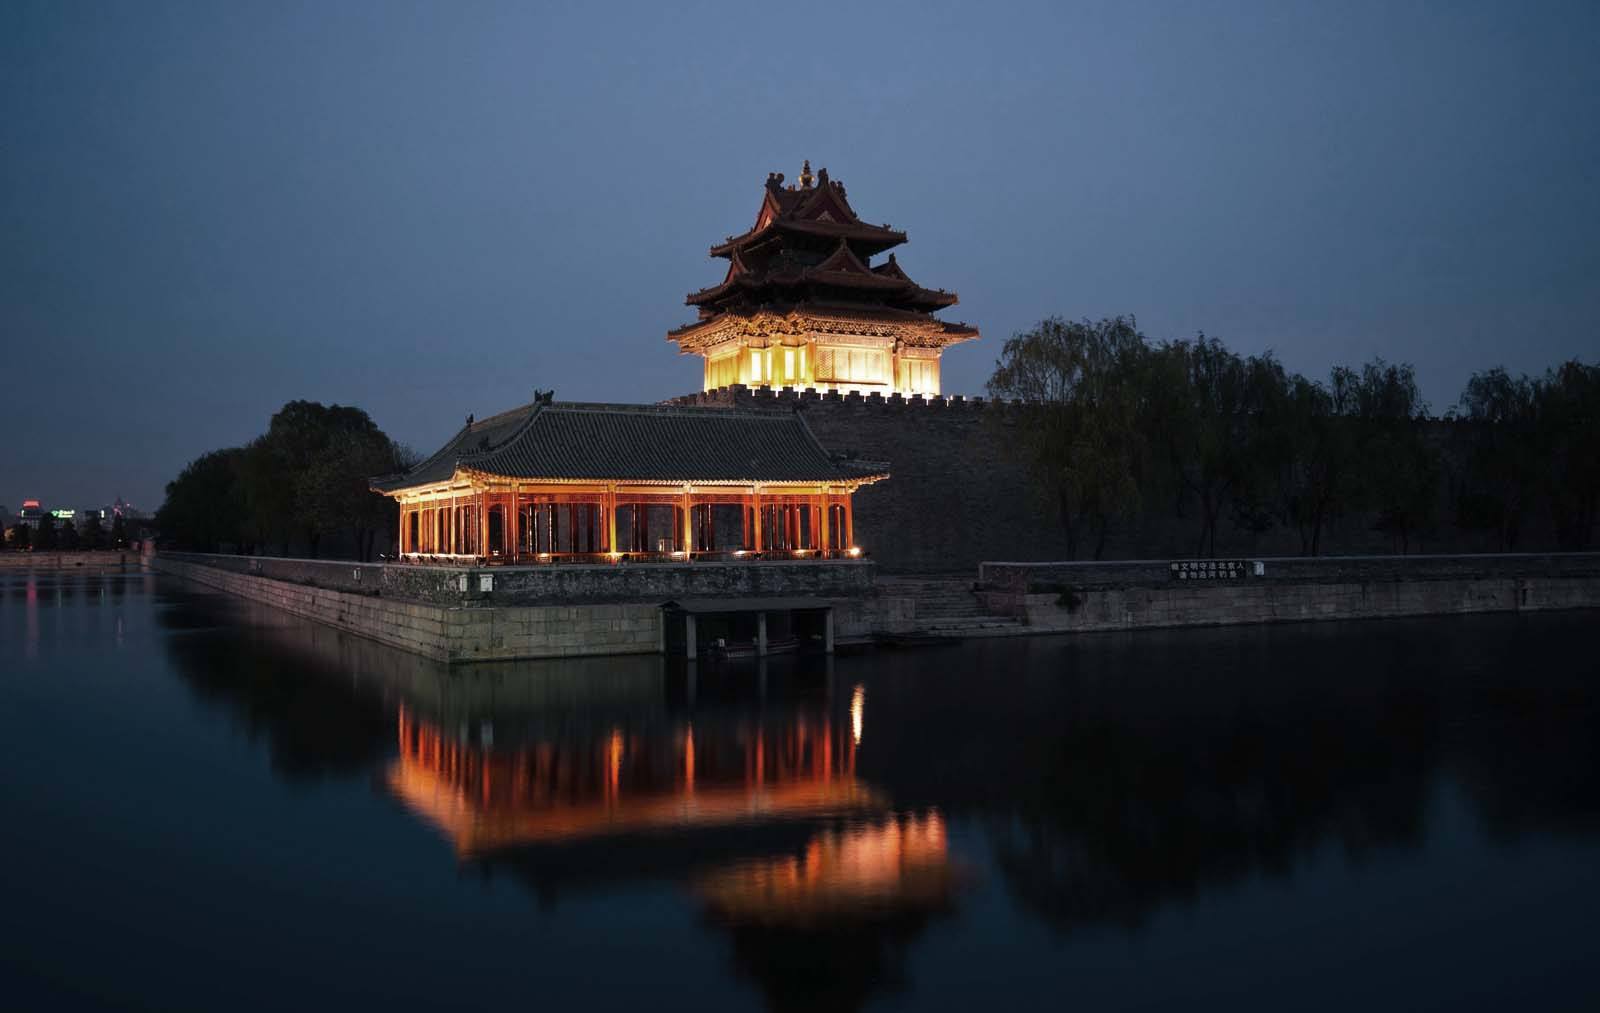 Forbidden City lit up at night, beijing